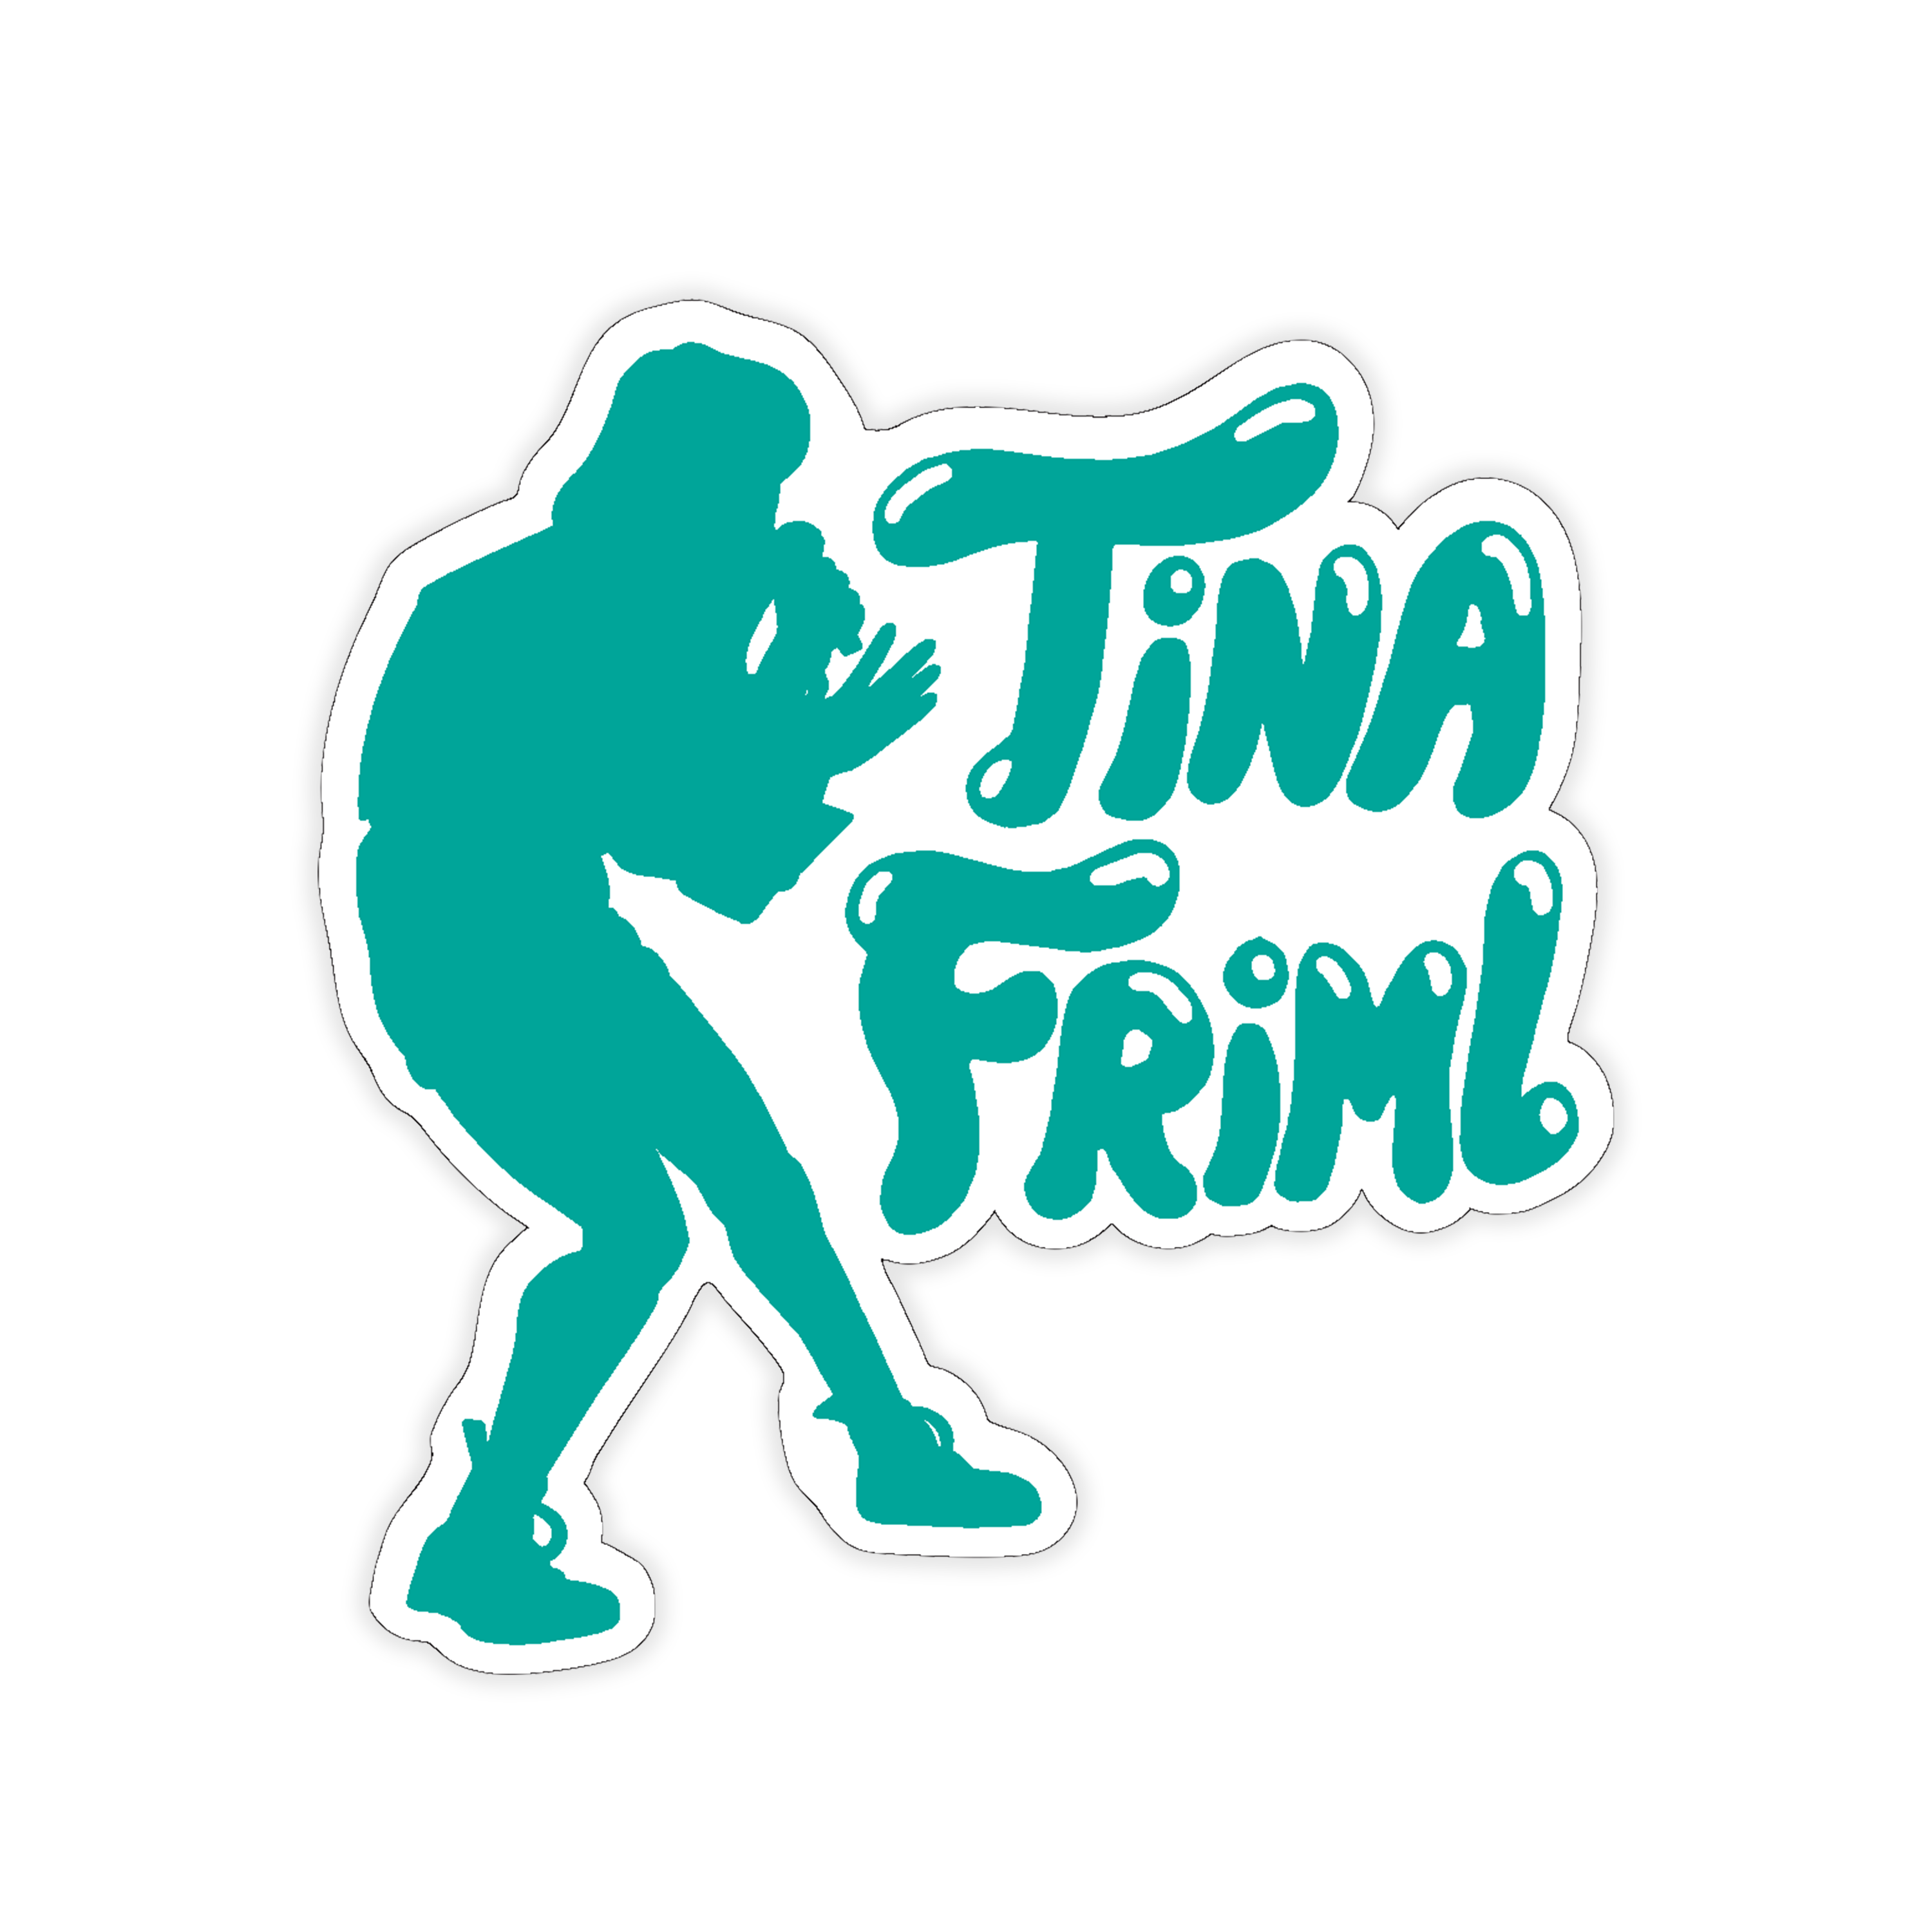 Tina Friml | Tina Pose Sticker